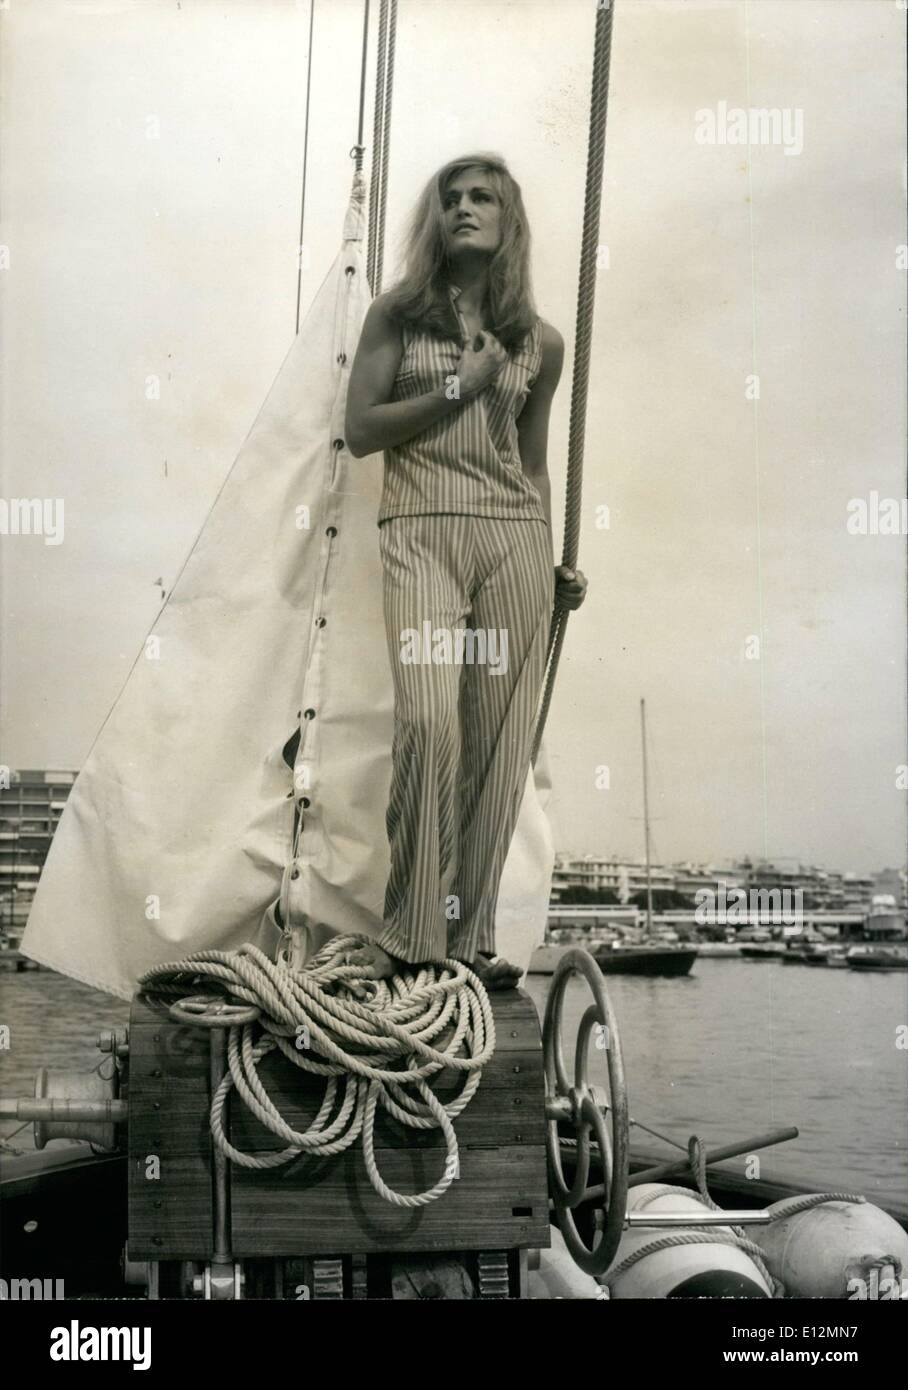 24. Februar 2012 - wie eine antike Statue: Dalida, die bekannte Sängerin und Kino star wie viele andere in der Gegenwart, steht MXXX in Cannes, posiert an unsere Fotografen wie eine antike Statue. Stockfoto